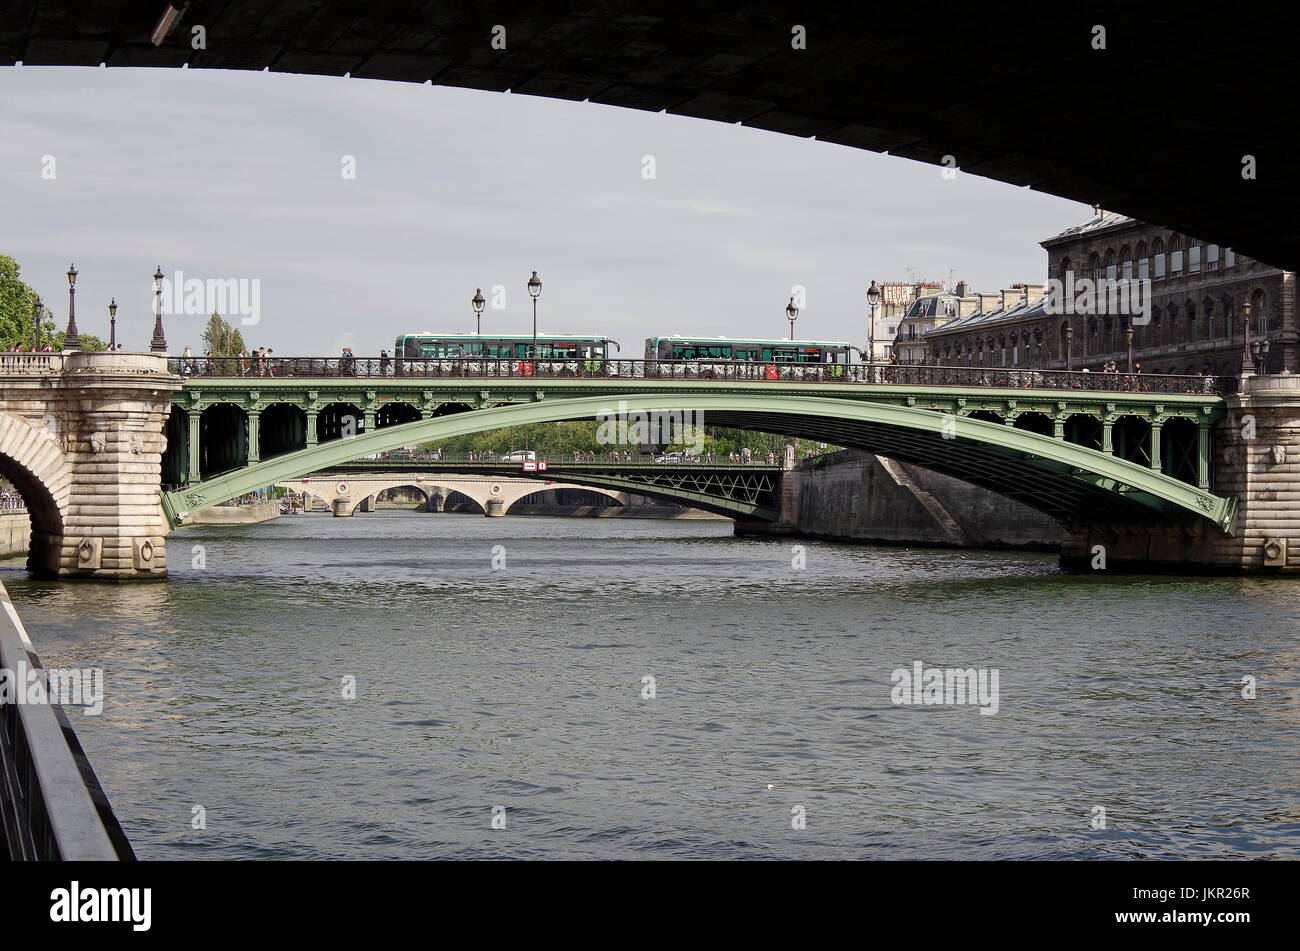 París, Francia, el Pont Notre Dame, sobre el río Sena, la vinculación de la orilla derecha en Quai de Gesvres a Ile de la Cité, al lado del Hôtel-Dieu Foto de stock